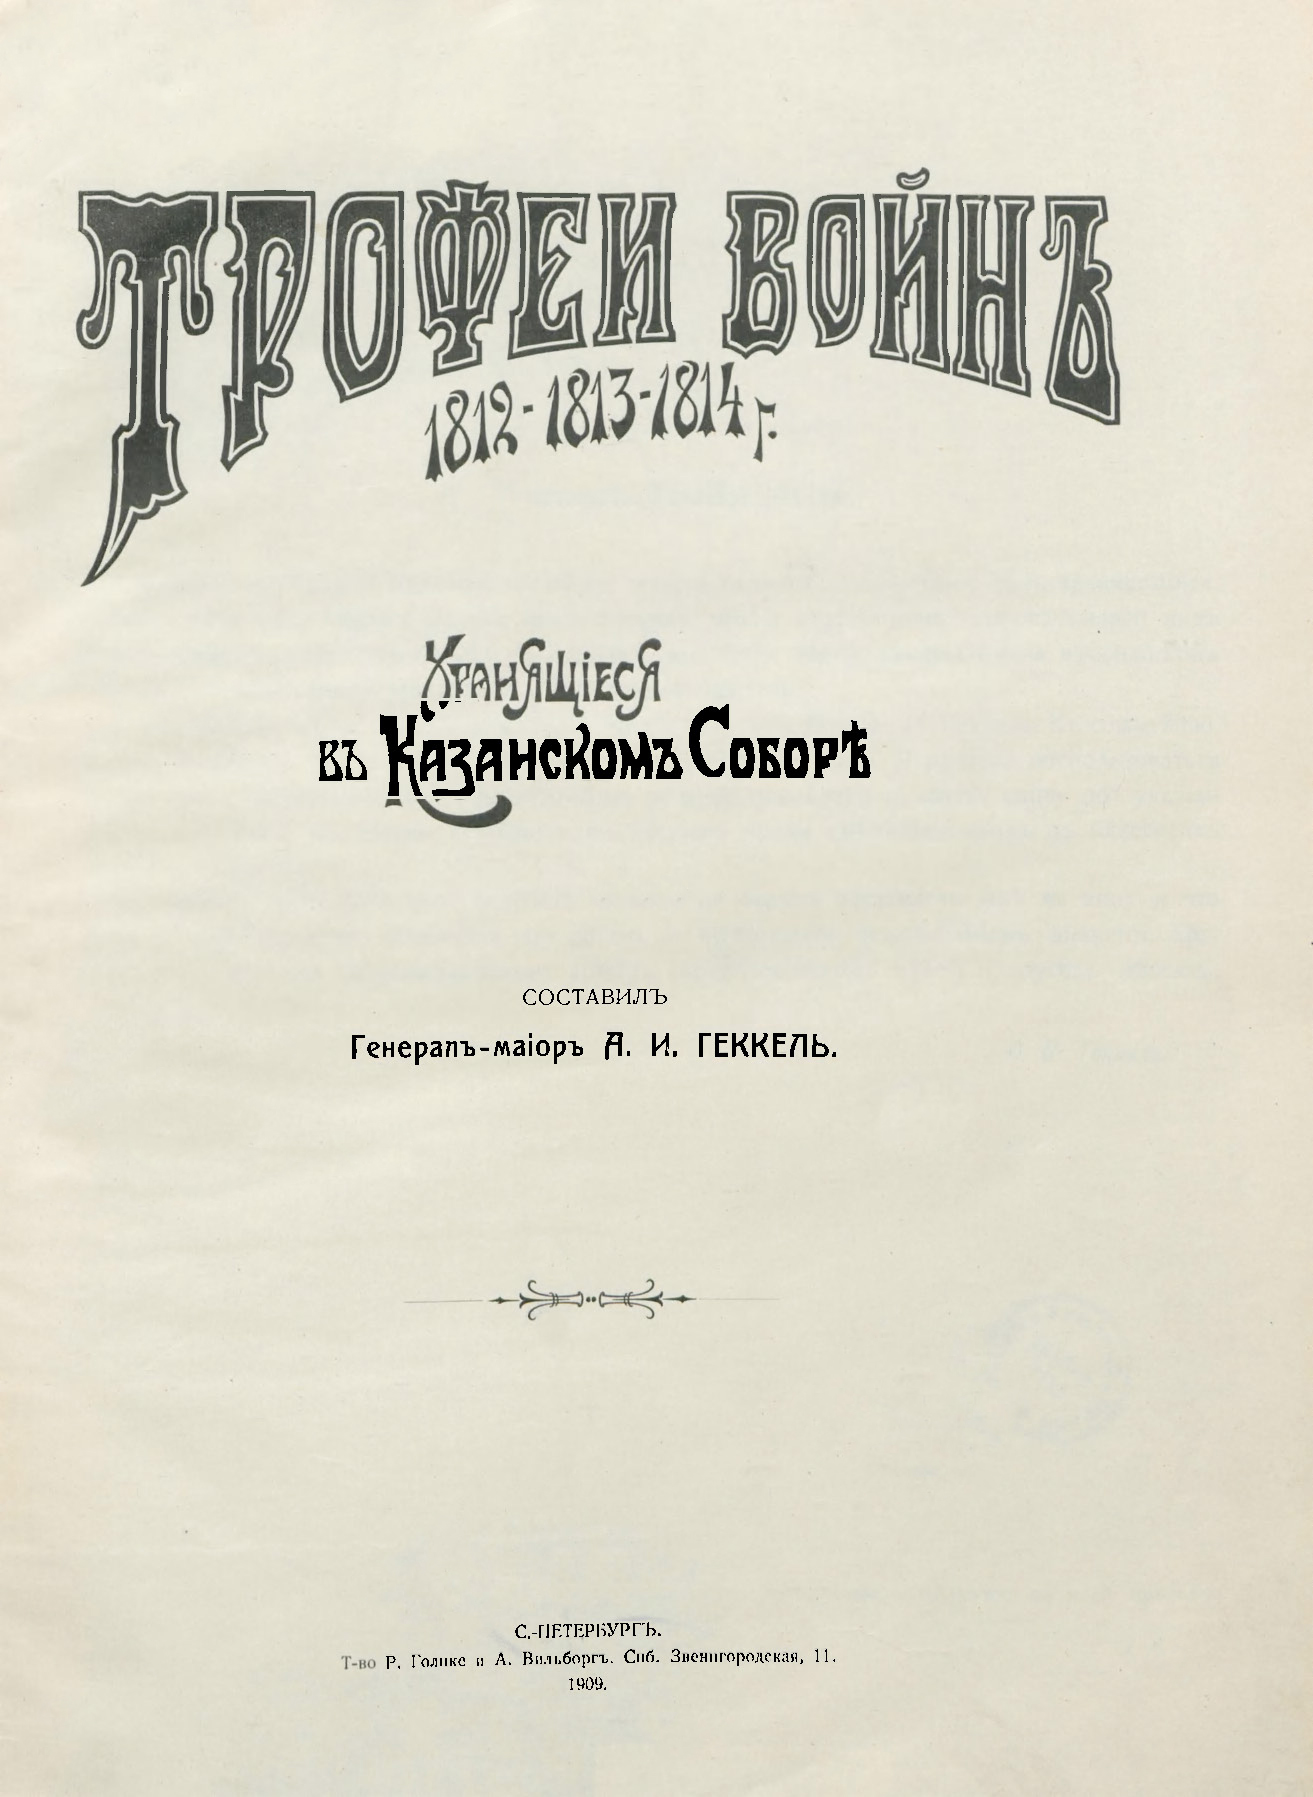 Книги 1909 года